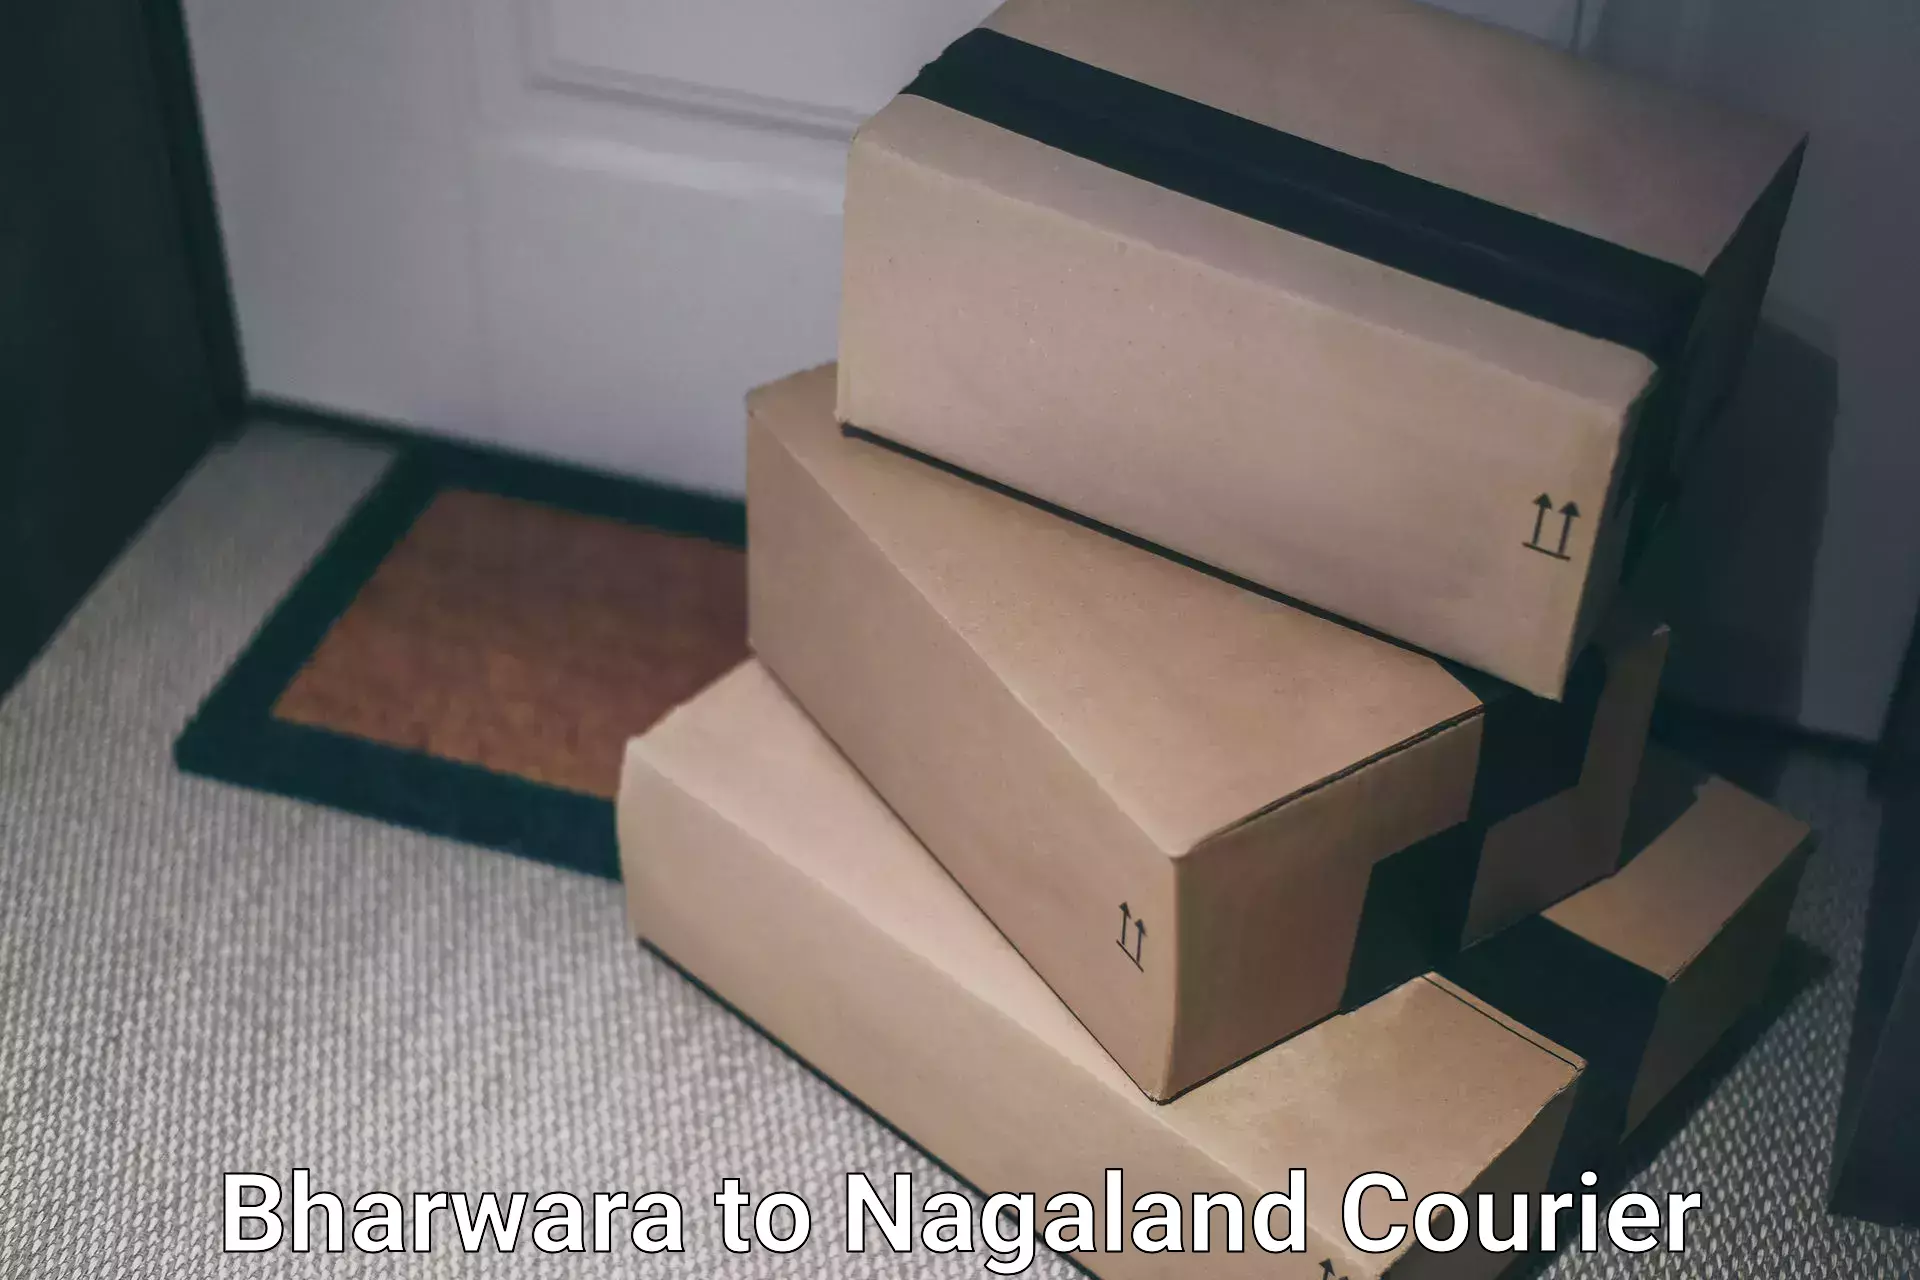 Express postal services Bharwara to Nagaland